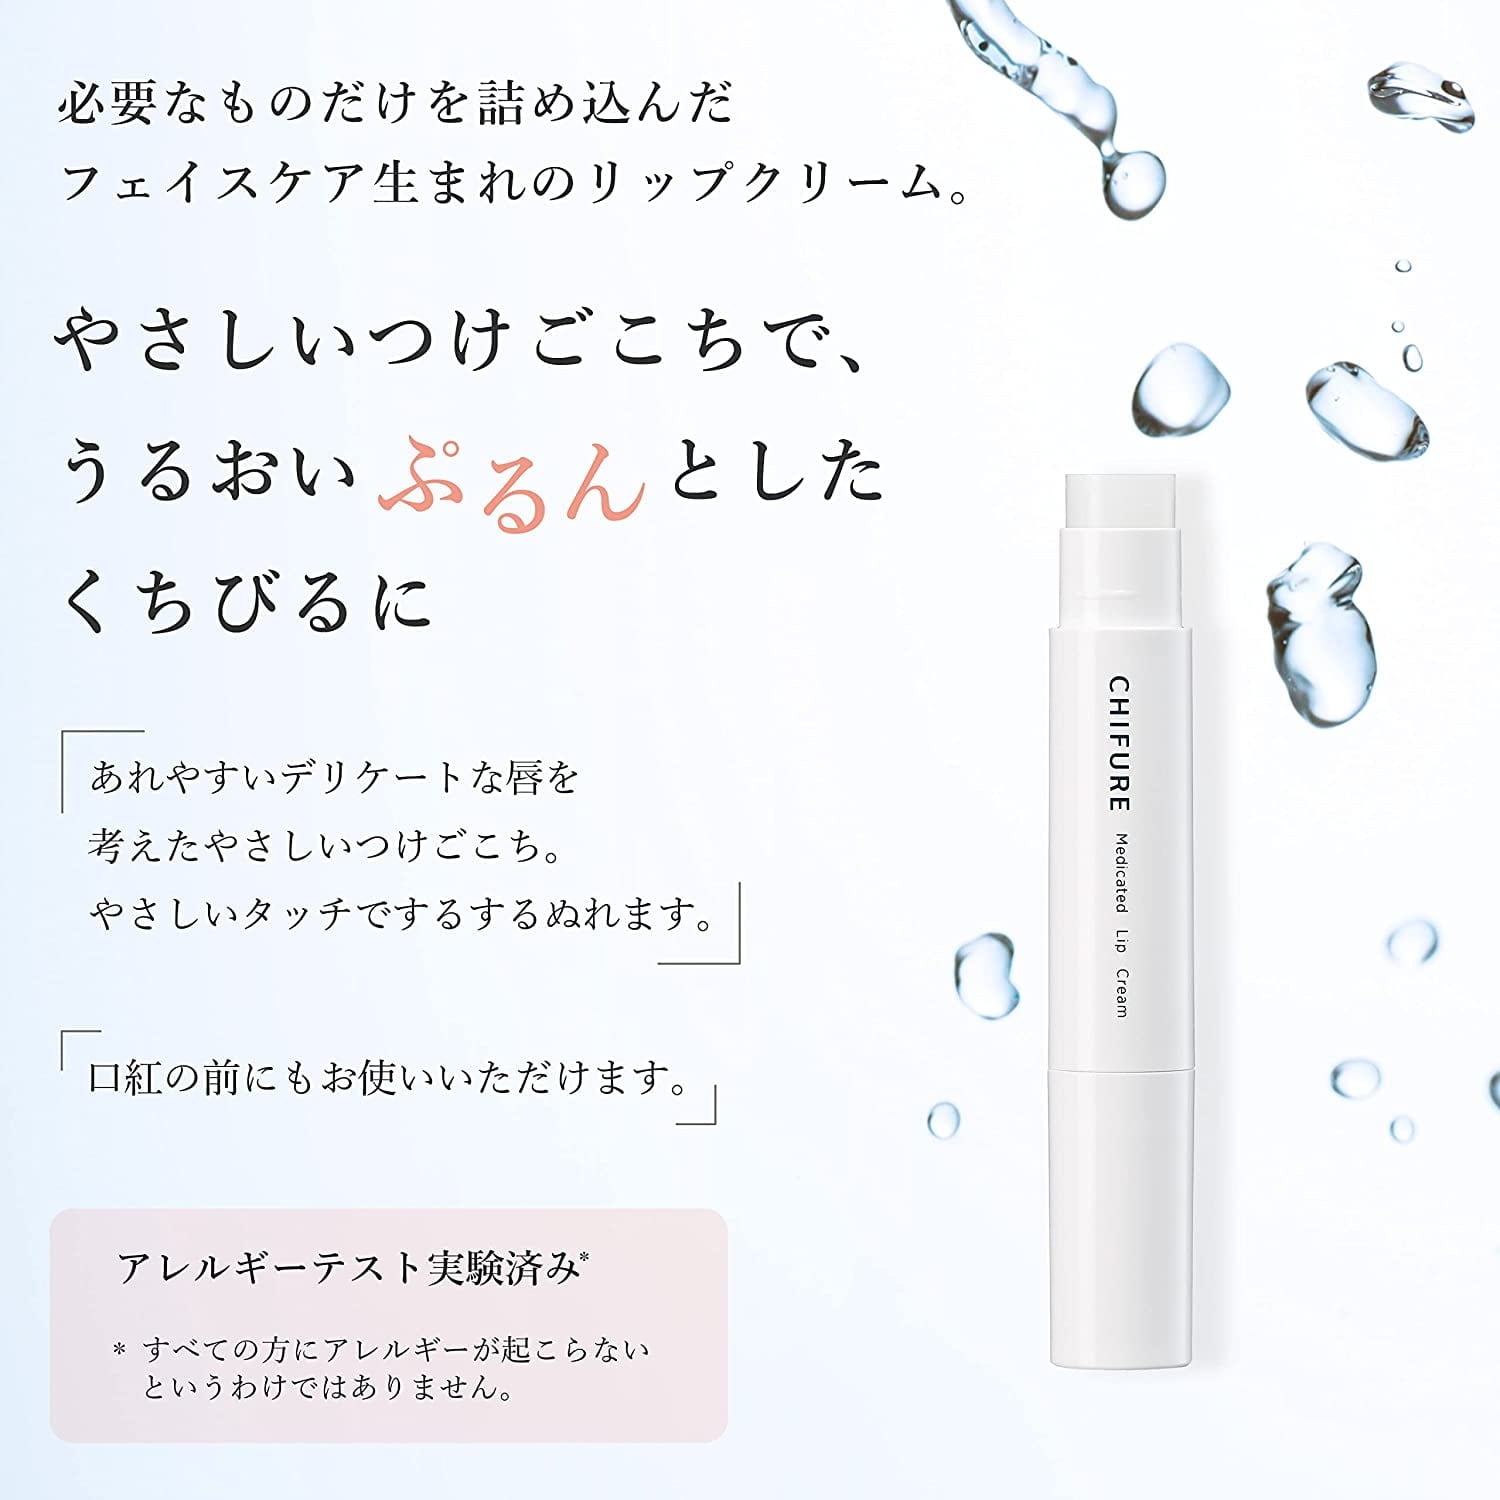 Chifure Medicated Lip Cream 2g - Buy Me Japan